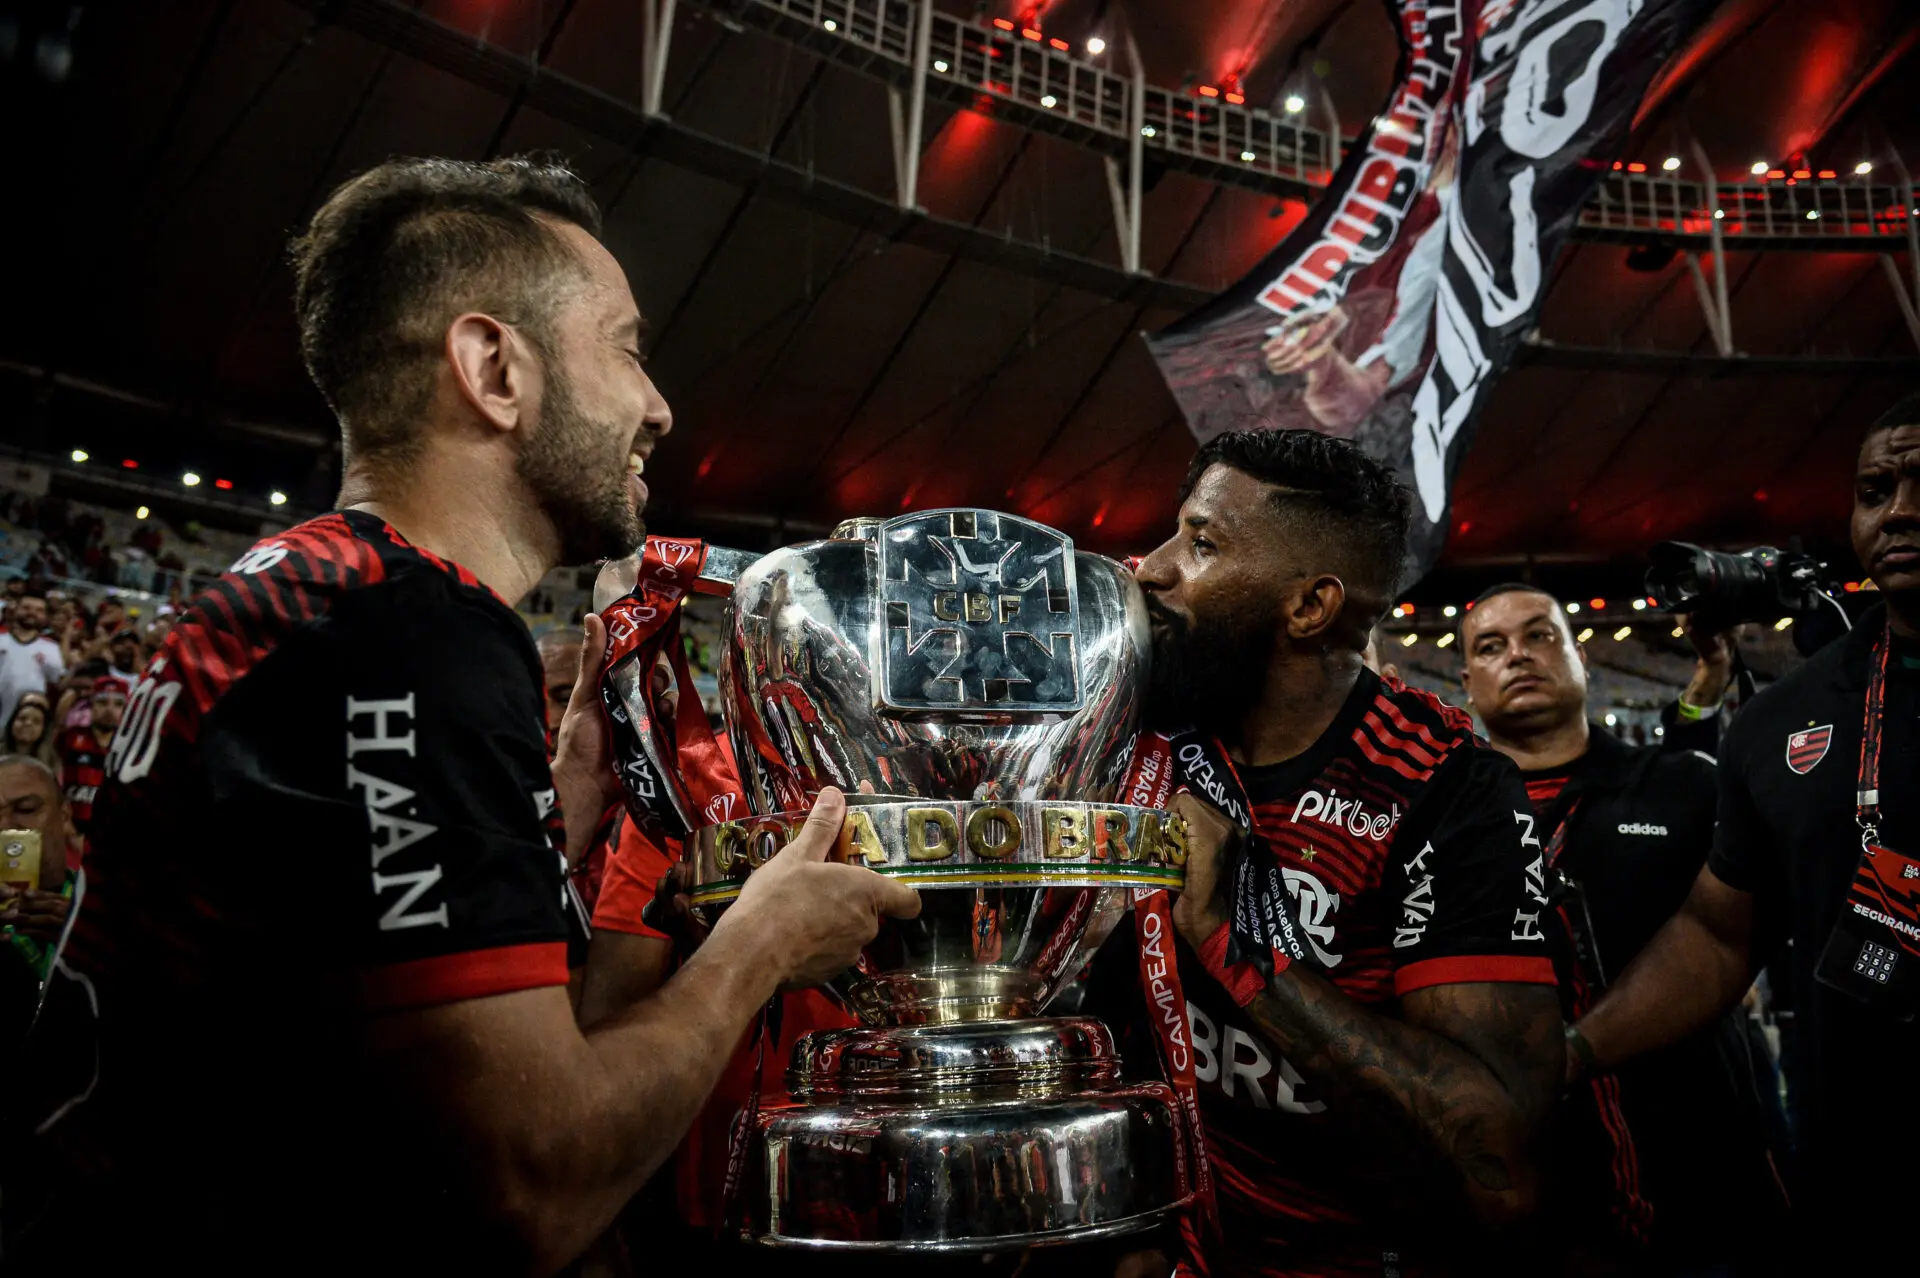 Nos pênaltis, Flamengo conquista a Copa do Brasil